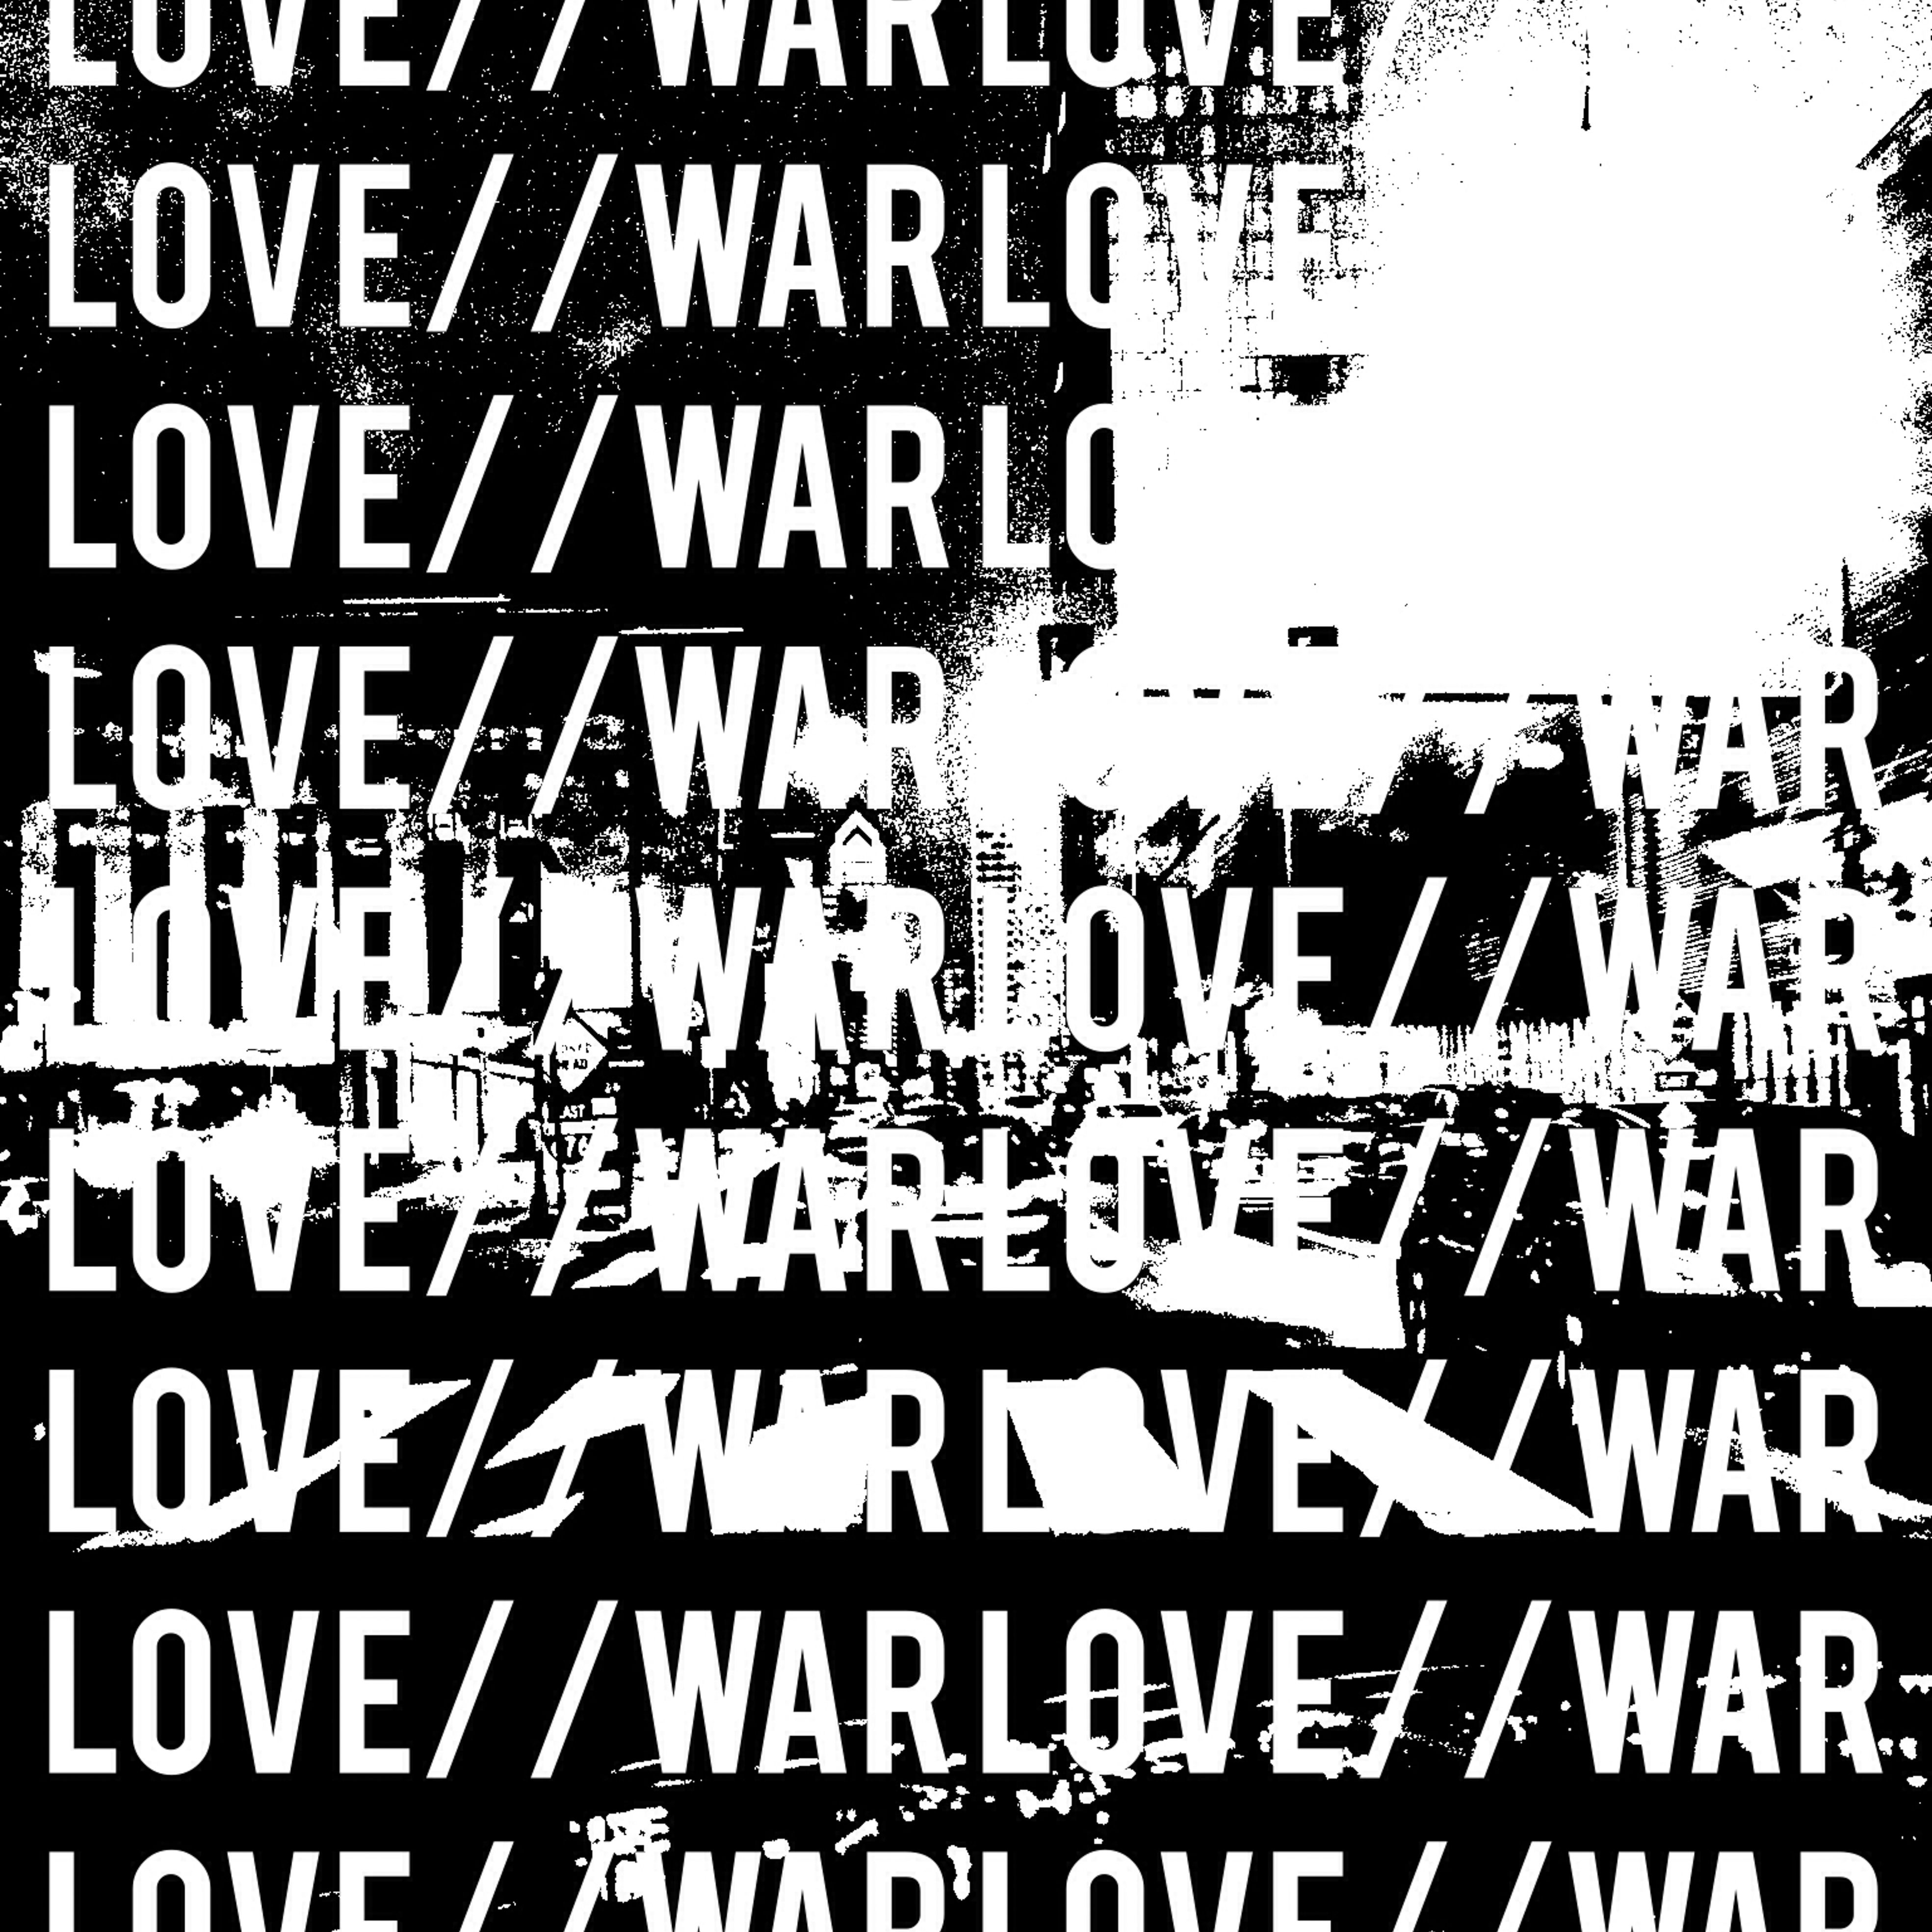 005 - The Art of LOVE//WAR.